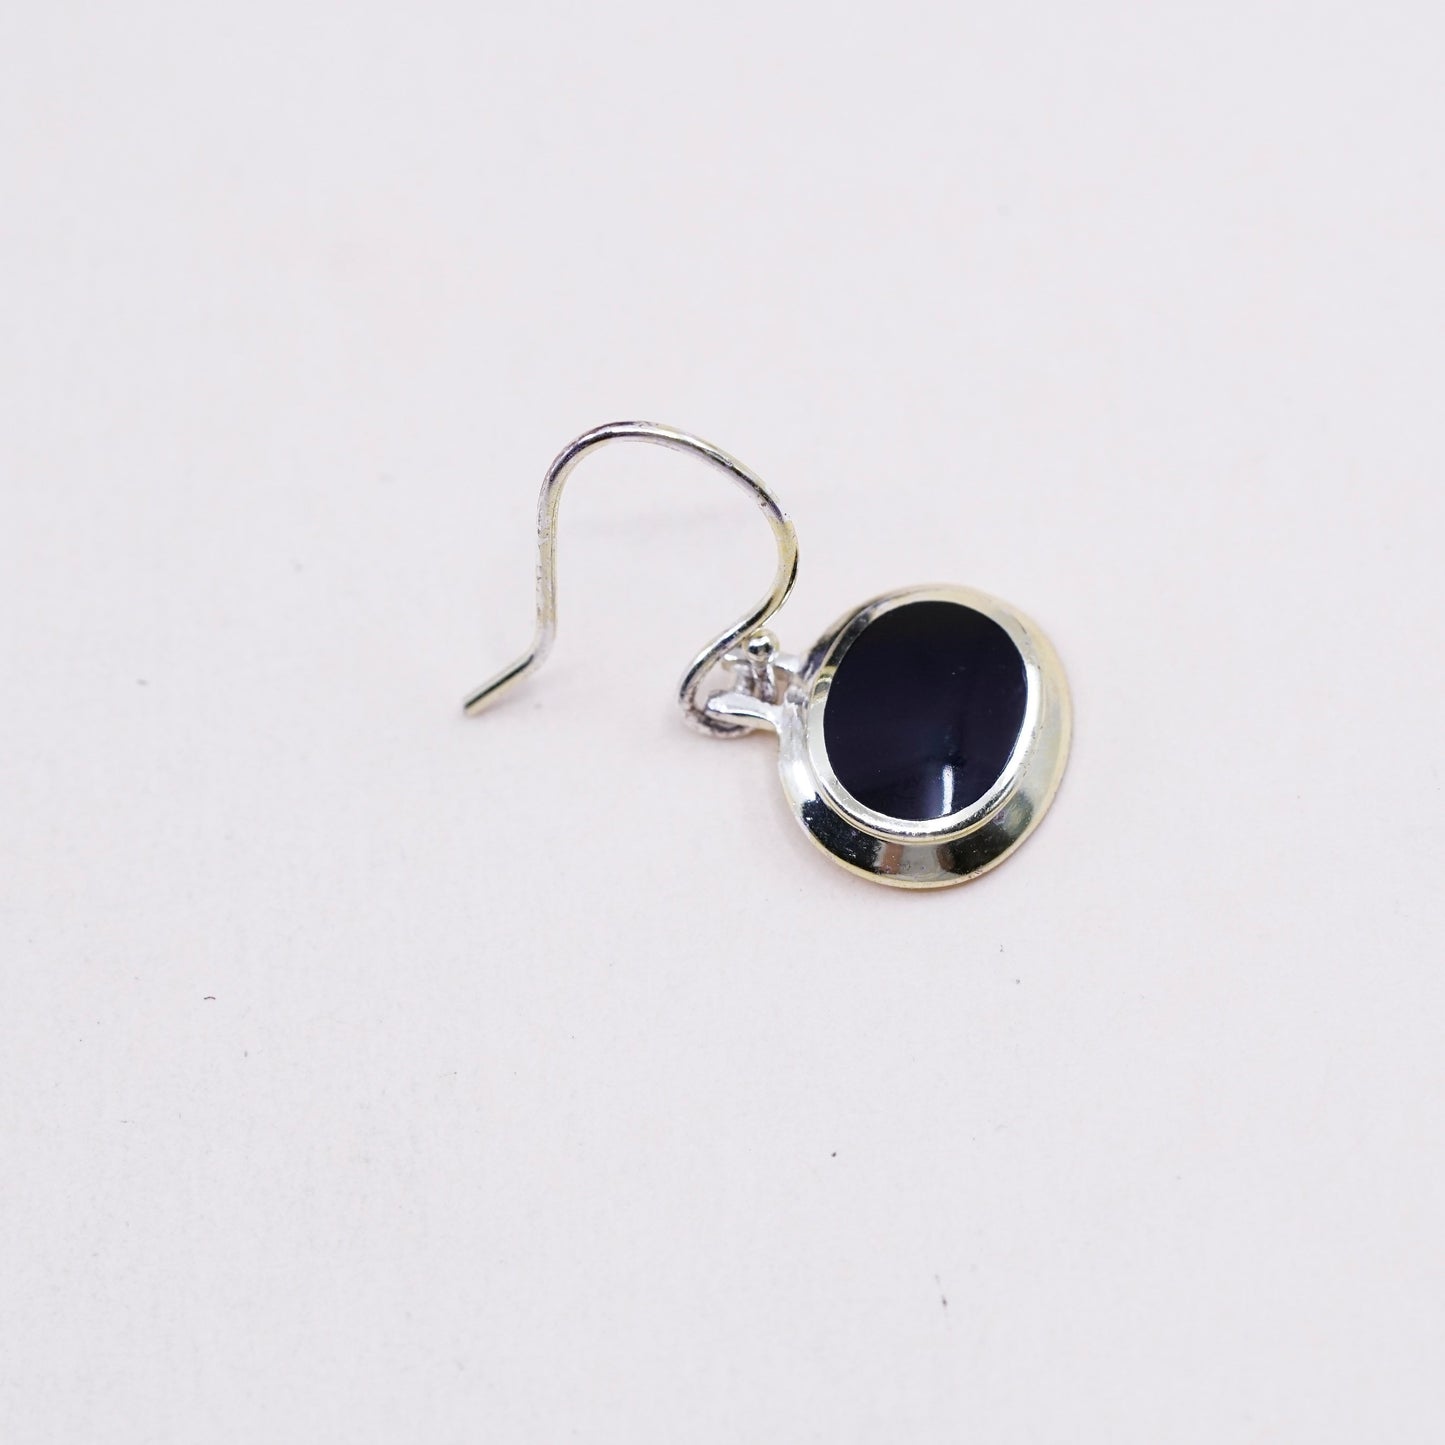 Vintage Sterling silver handmade earrings, 925 oval obsidian